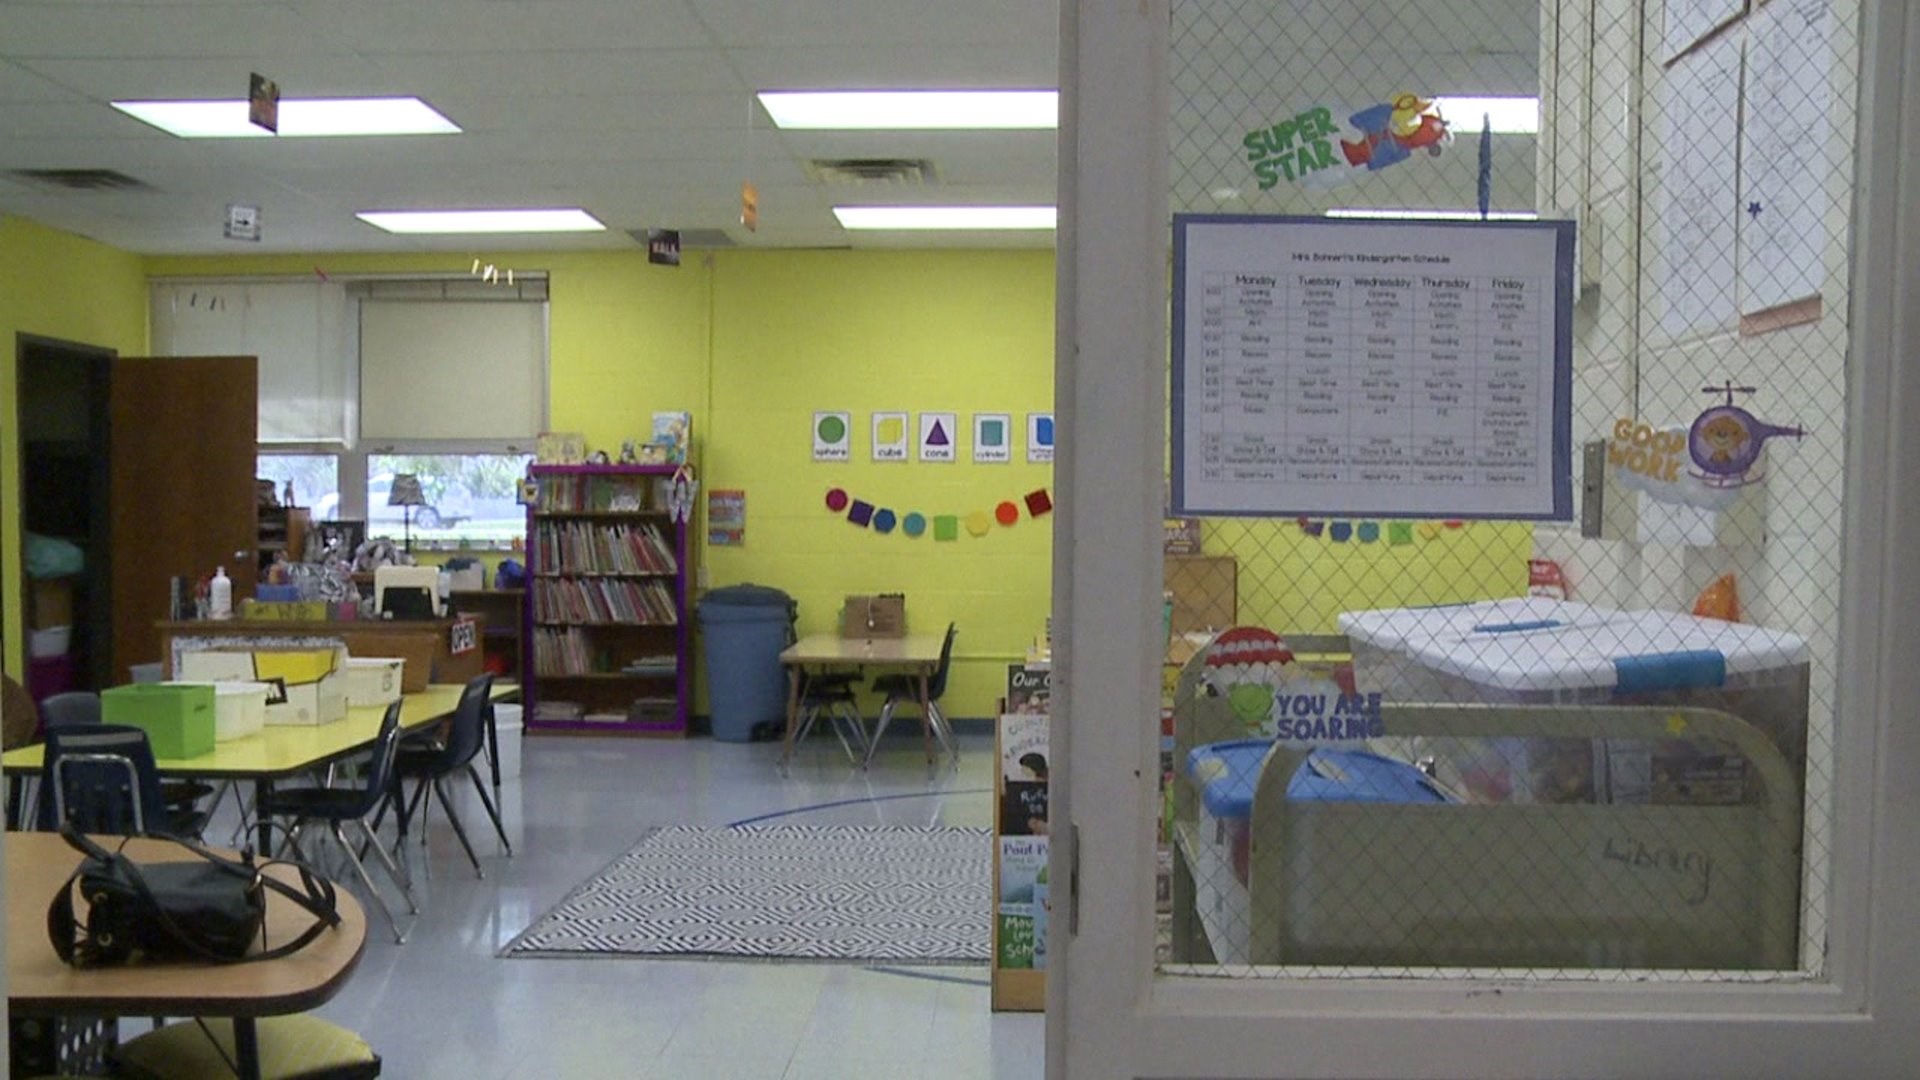 Sherrard school district sees increase in kindergarteners